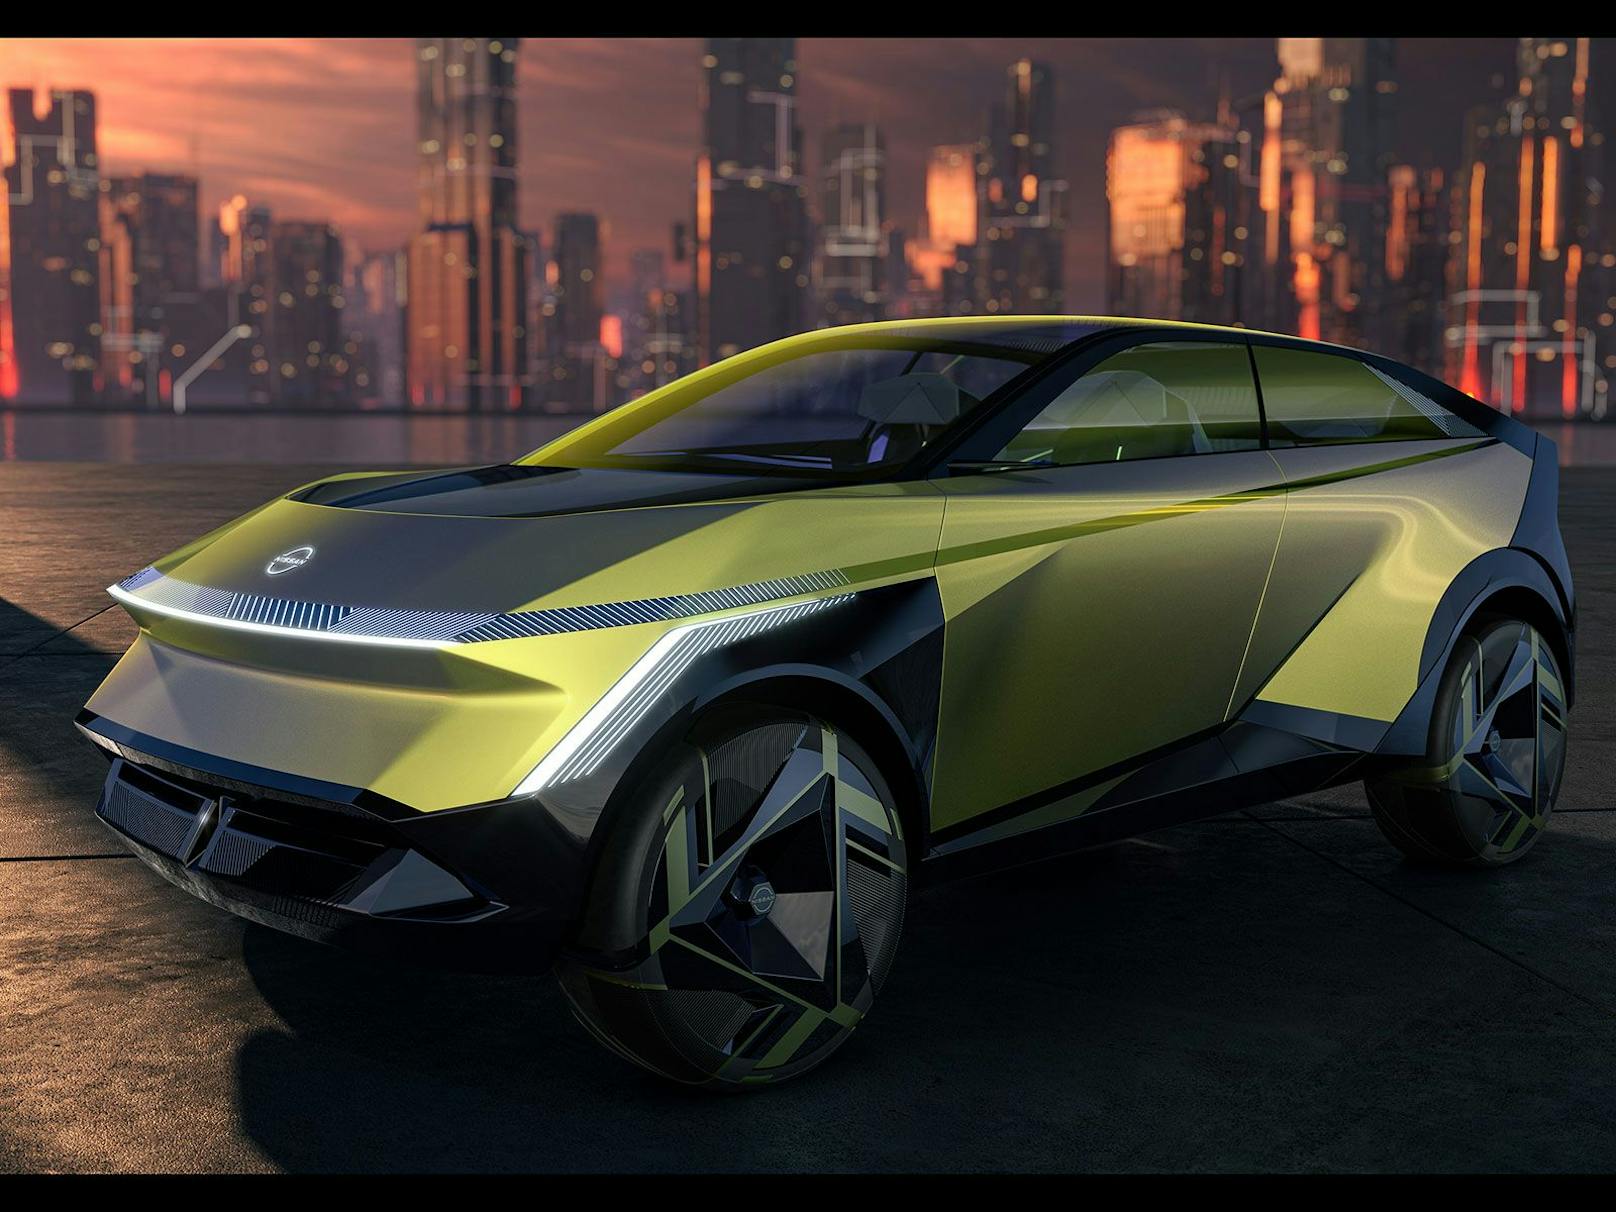 Scharfe Kanten prägen das Design des Concept Cars.